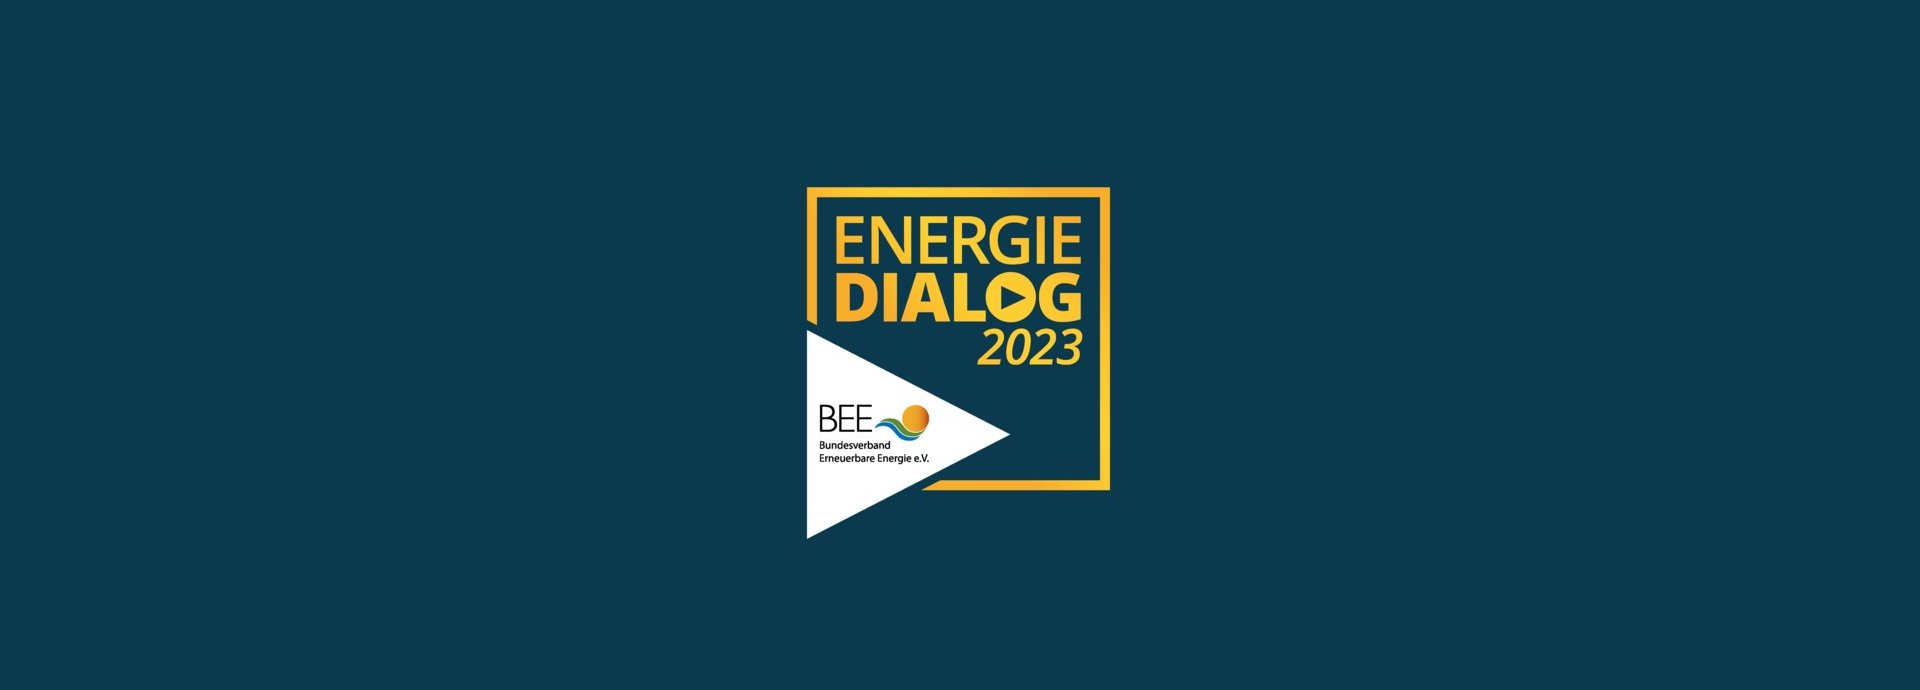 ENERGIEDIALOG 2023 Keyvisual